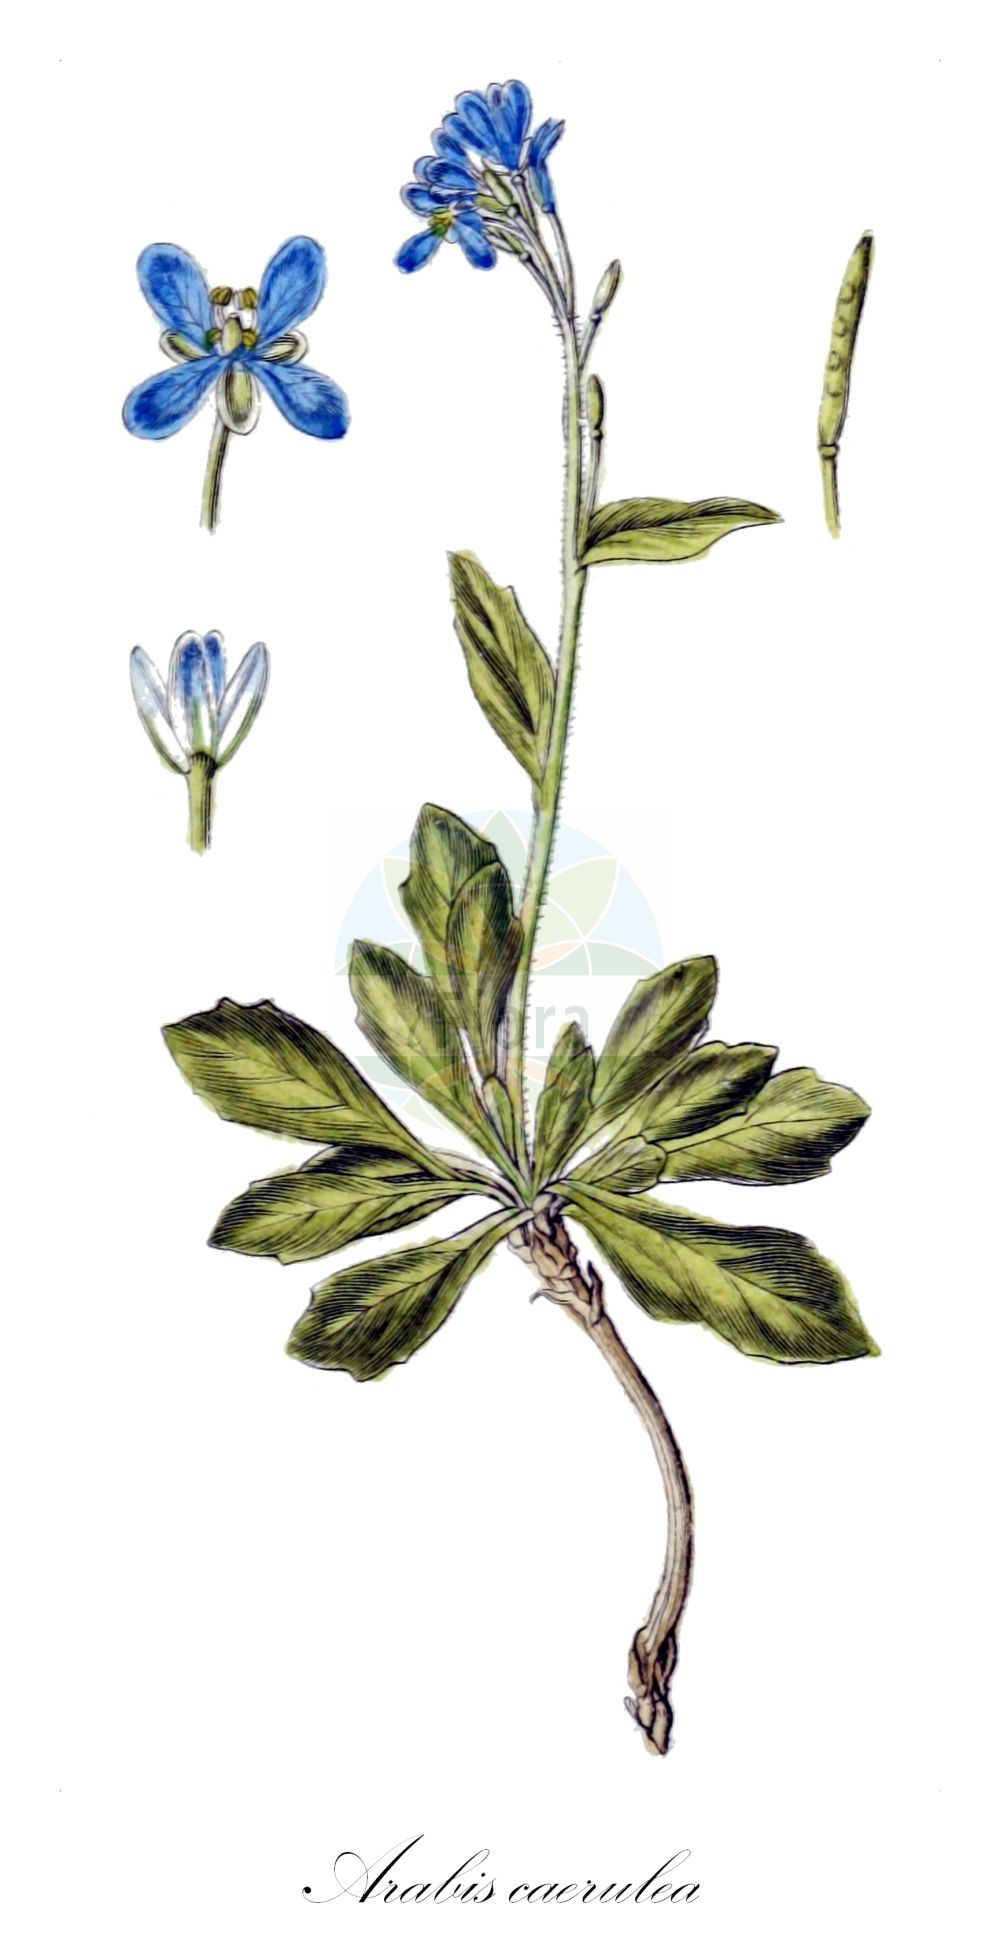 Historische Abbildung von Arabis caerulea (Blaue Gänsekresse - Blue Arabis). Das Bild zeigt Blatt, Bluete, Frucht und Same. ---- Historical Drawing of Arabis caerulea (Blaue Gänsekresse - Blue Arabis). The image is showing leaf, flower, fruit and seed.(Arabis caerulea,Blaue Gänsekresse,Blue Arabis,Arabis caerulea,Turritis caerulea,Blaue Gaensekresse,Blaukresse,Blue Arabis,Bluish Rockcress,Arabis,Gänsekresse,Rockcress,Brassicaceae,Kreuzblütler,Cabbage family,Blatt,Bluete,Frucht,Same,leaf,flower,fruit,seed,Sturm (1796f))